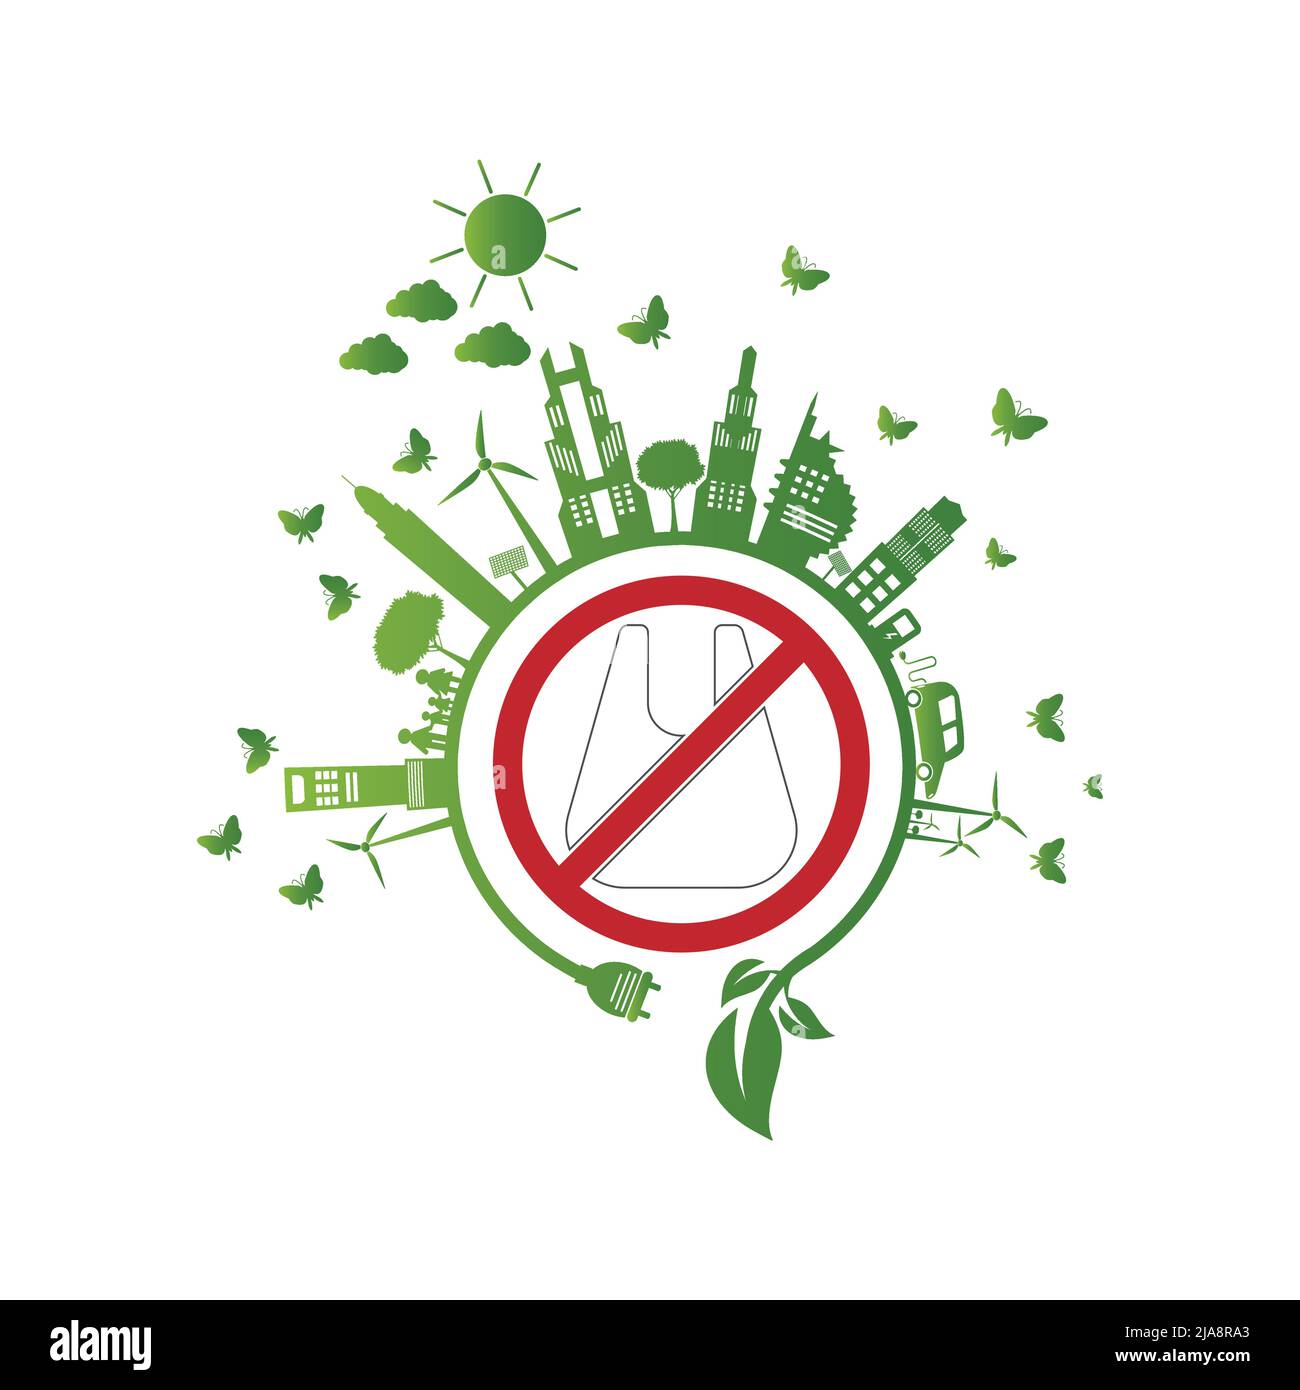 Ecologie.Green villes aide pas de sacs en plastique éco-friendly idées de concept, illustration vectorielle Illustration de Vecteur